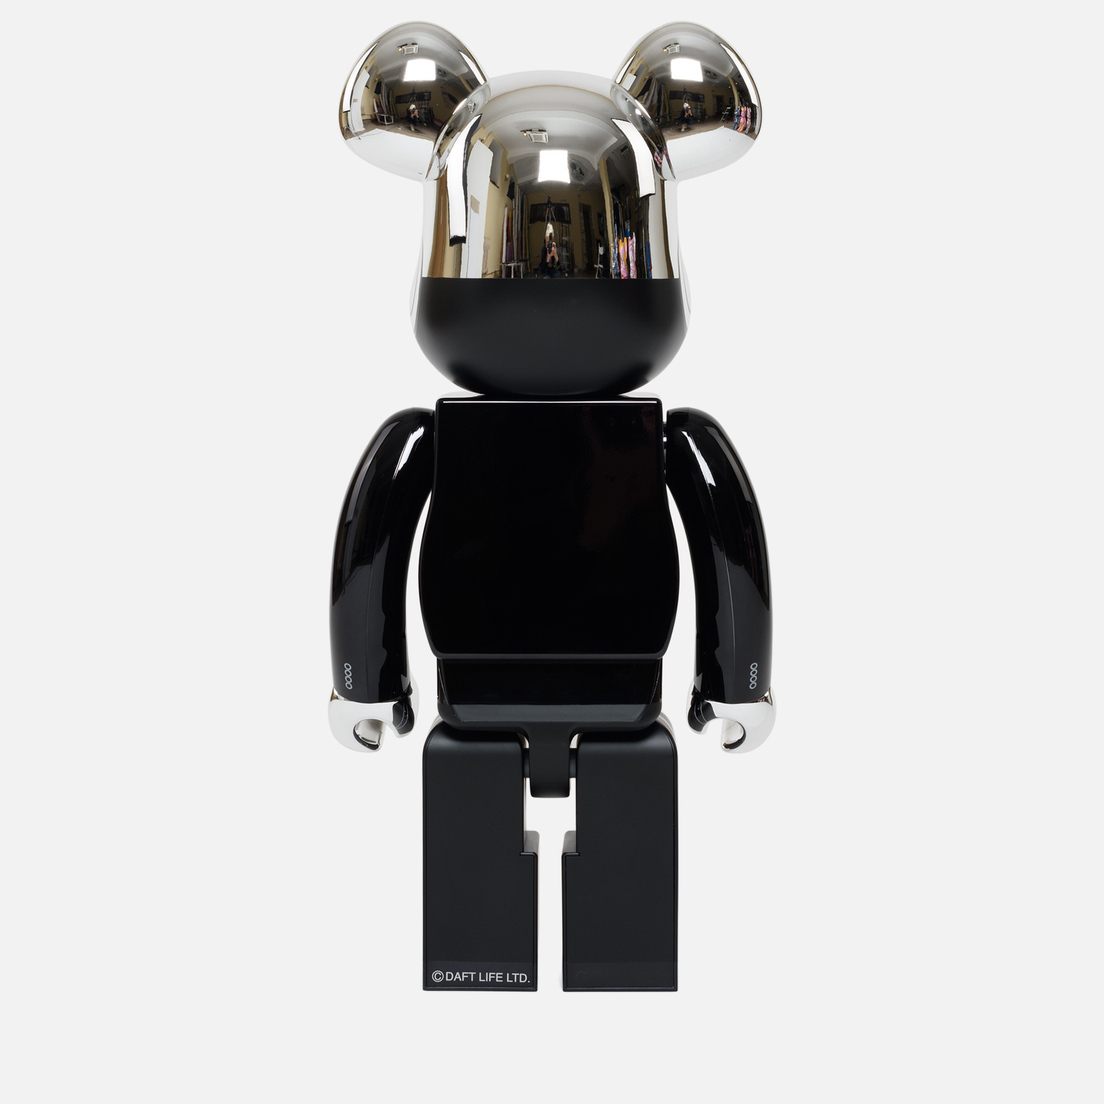 Medicom Toy Игрушка Daft Punk Thomas Bangalter 1000%